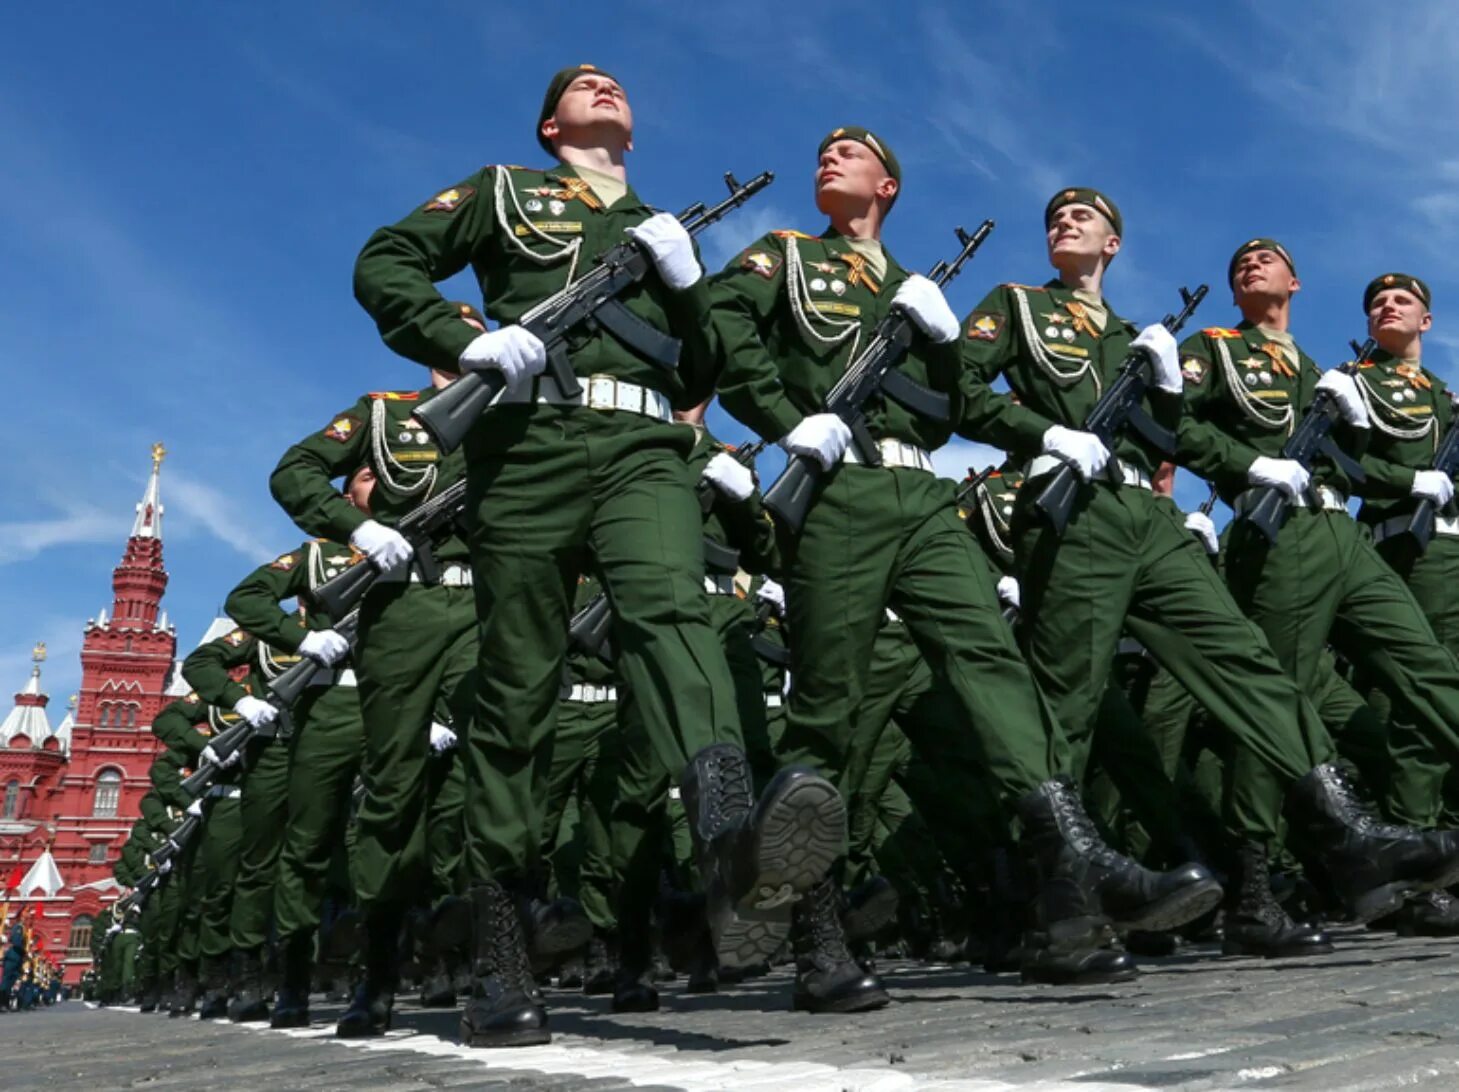 Солдаты на параде. Российский солдат на параде. Русские солдаты на параде. Современная Российская армия. Фото армии рф